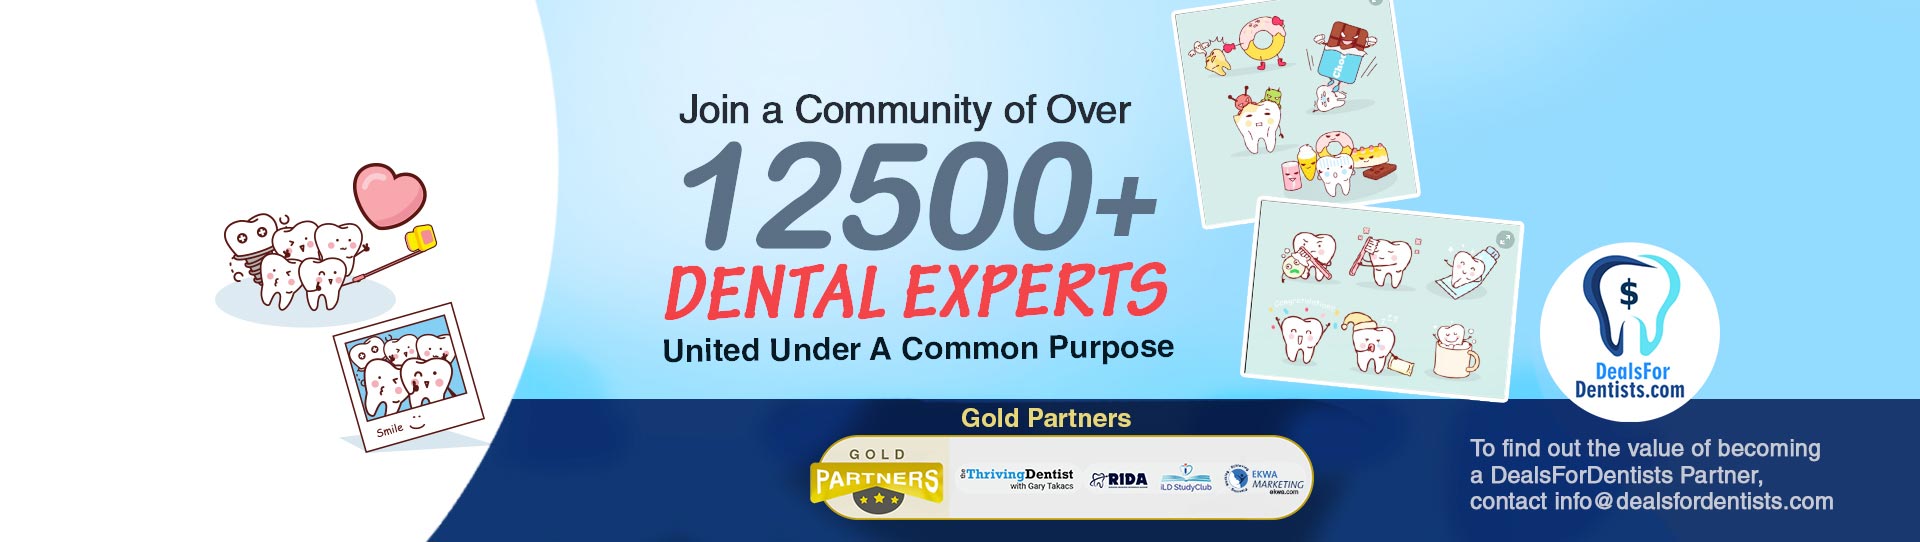 Over 12500 Dental Experts